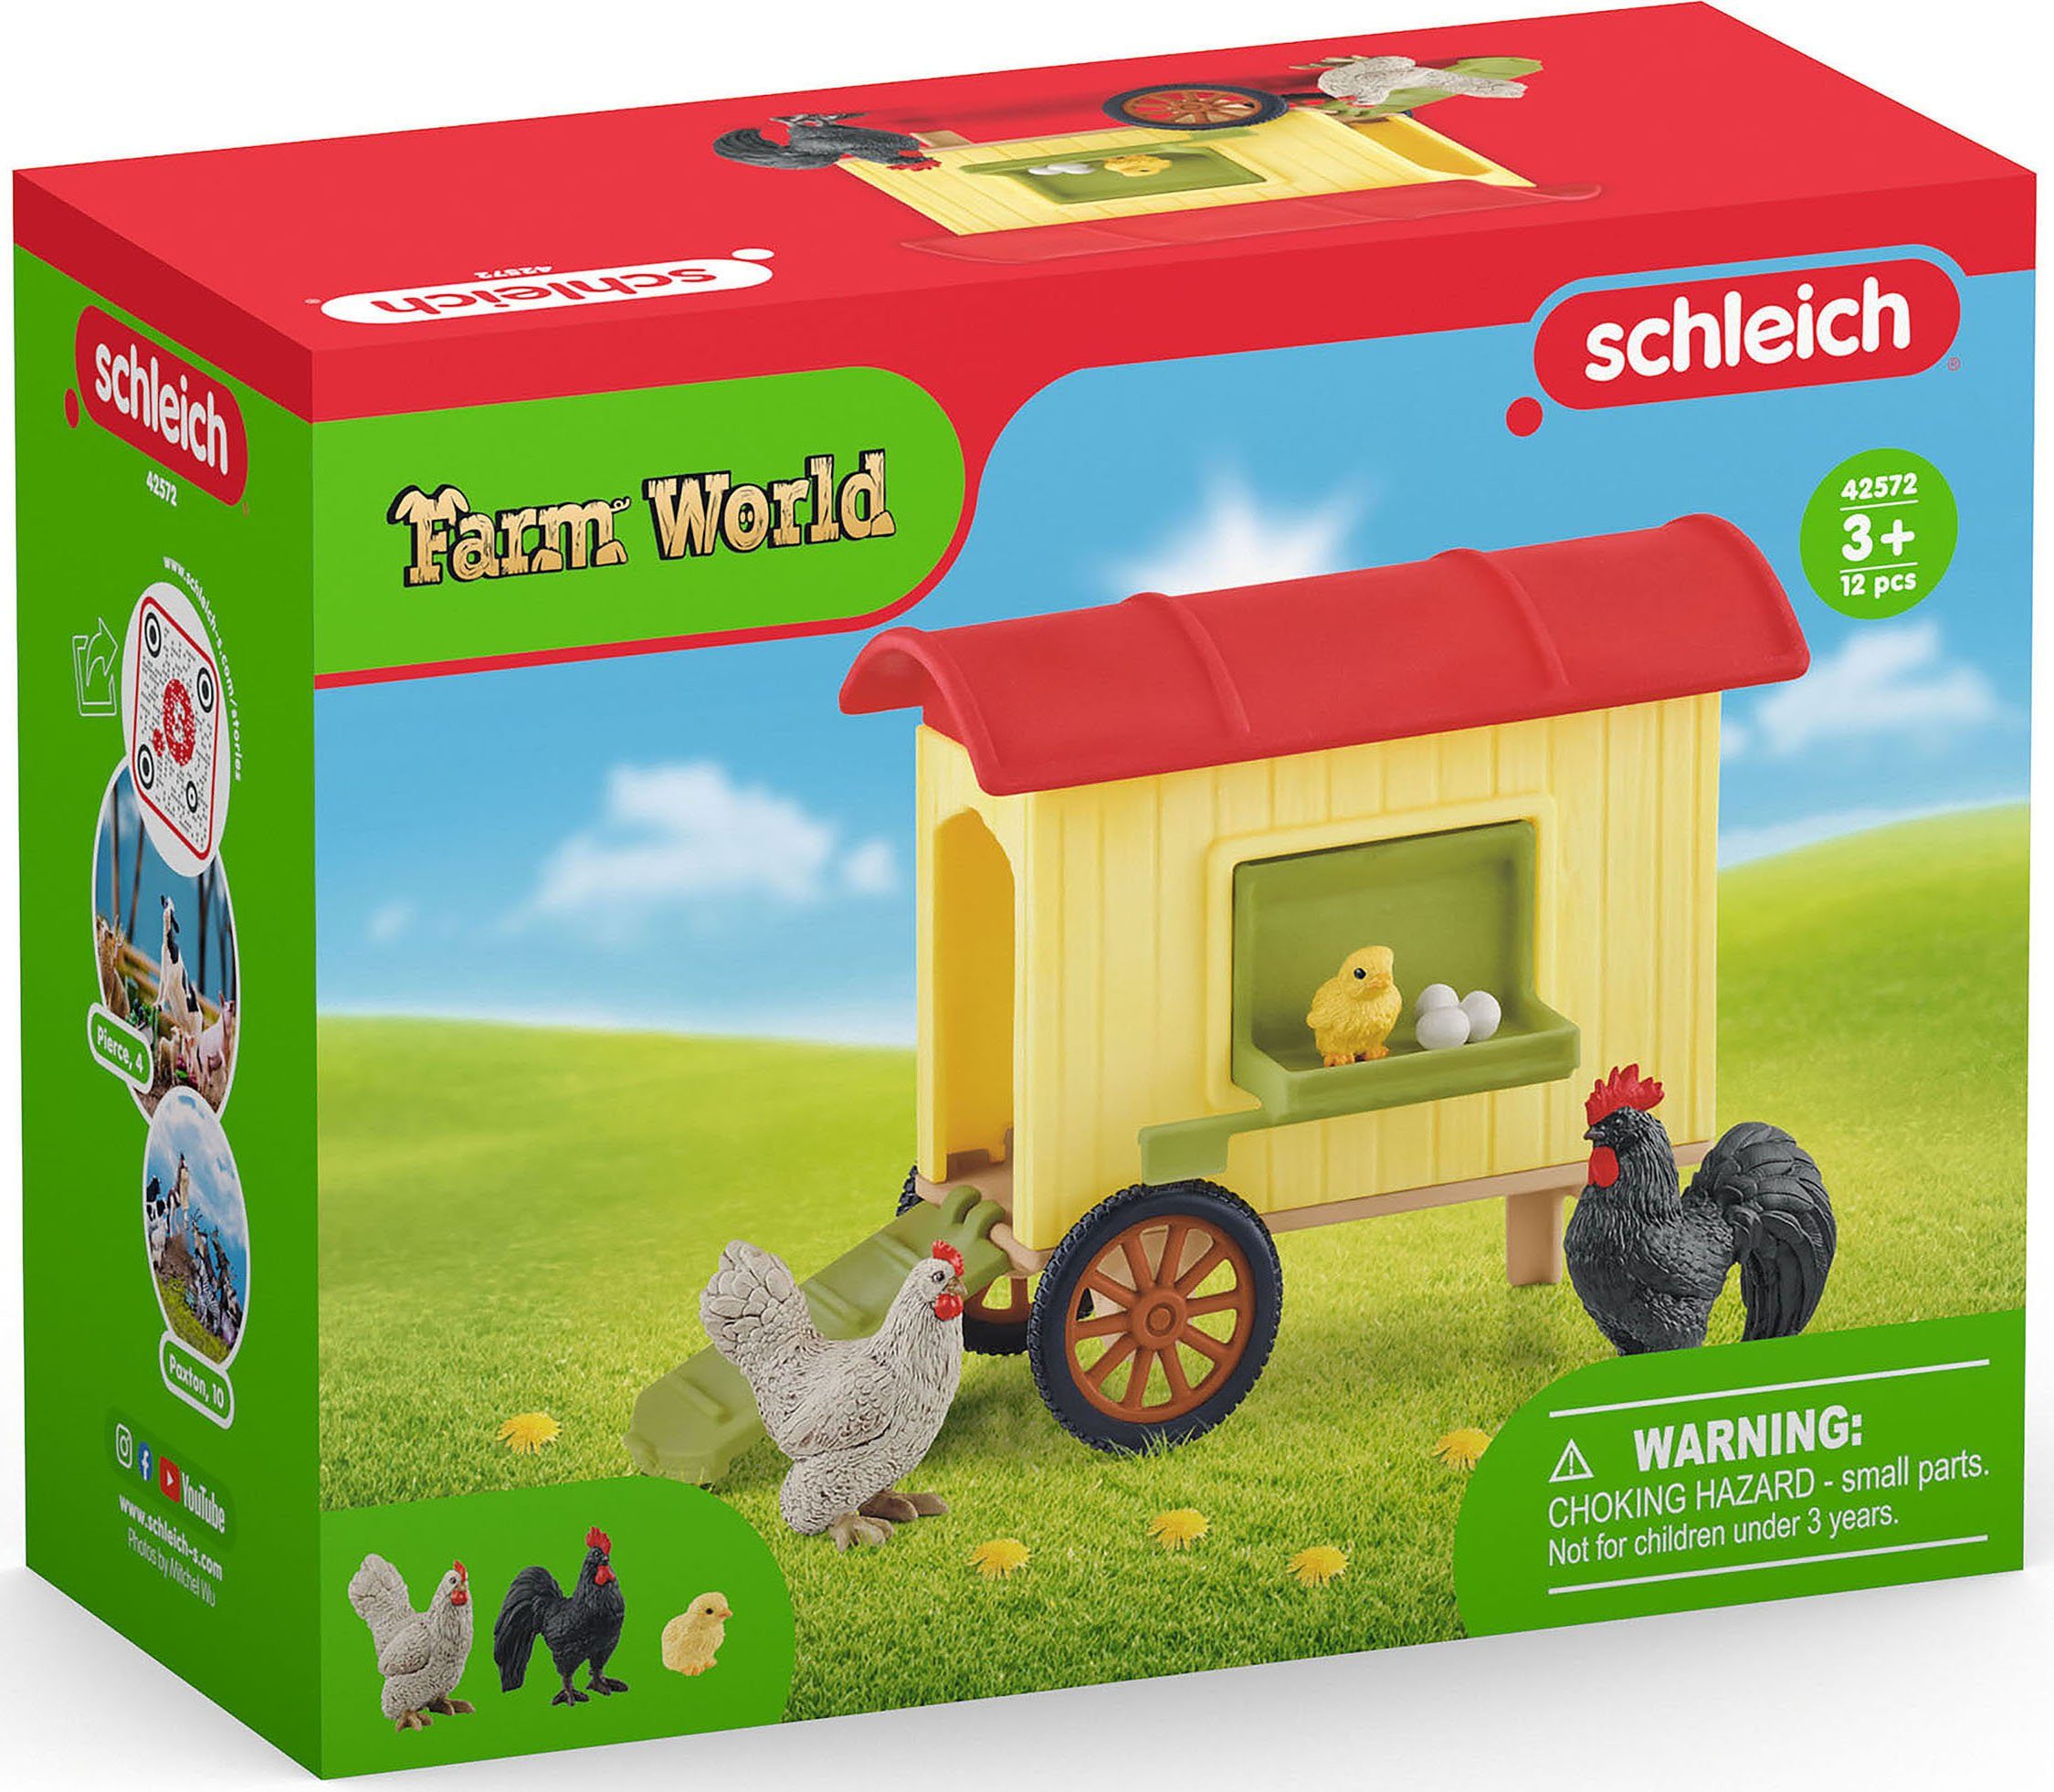 Schleich® FARM WORLD, (42572) Spielwelt Hühnerstall